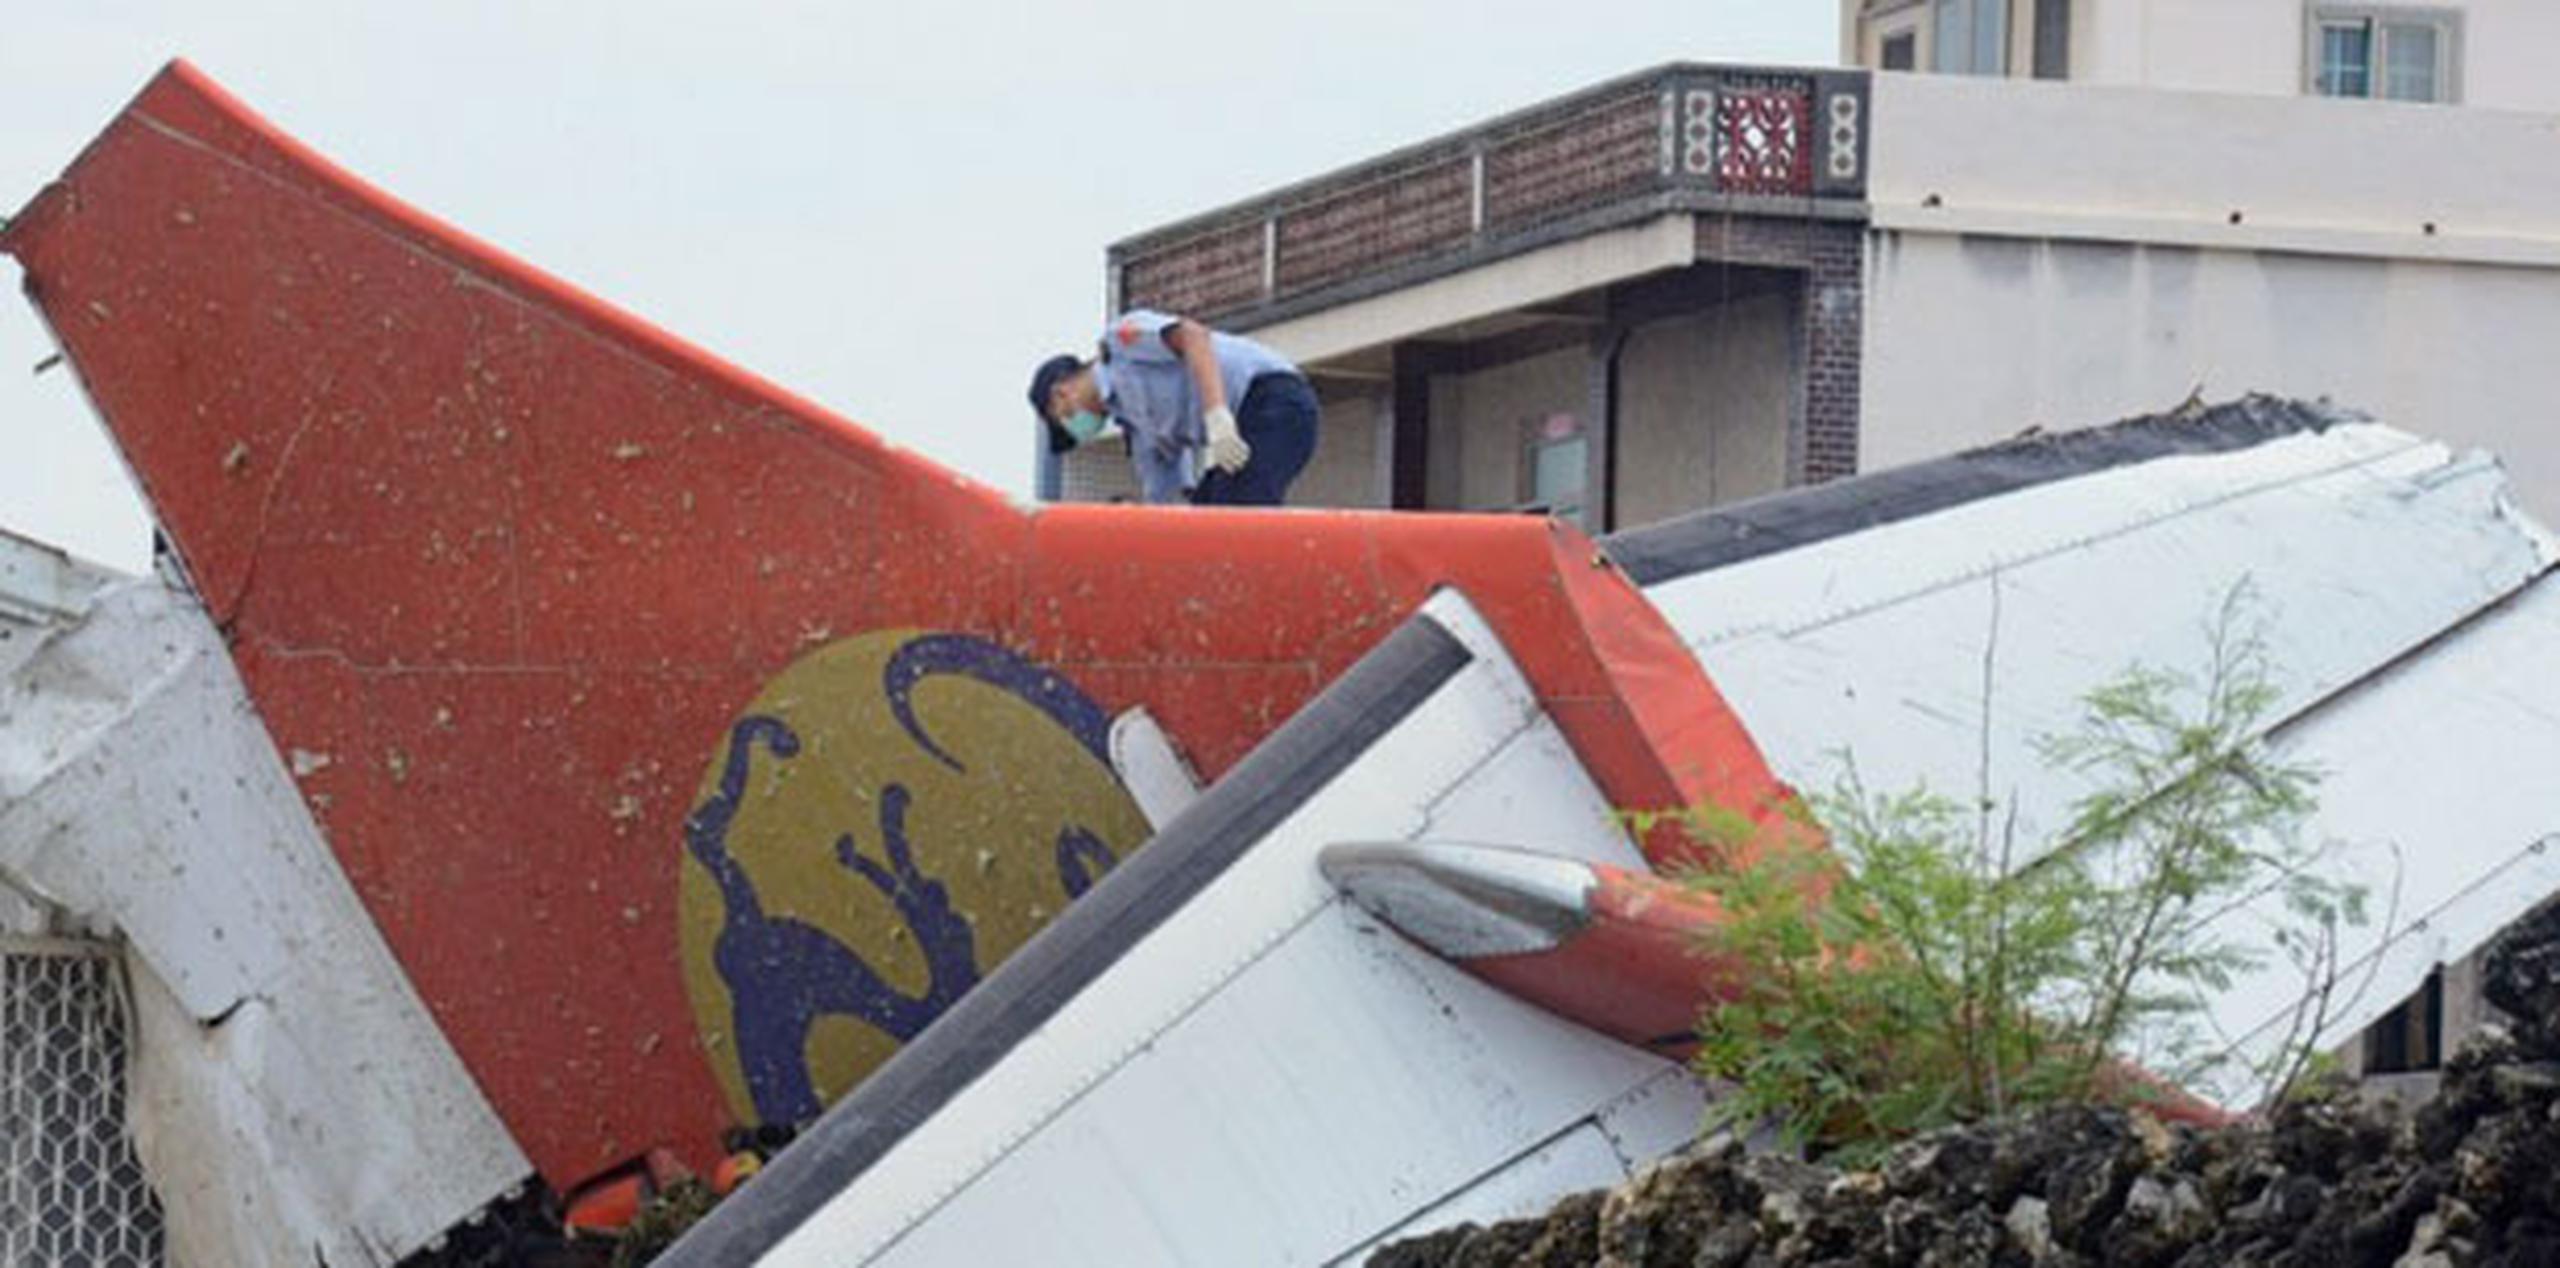 El tiempo tormentoso y la escasa visibilidad pueden haber influido en el accidente del avión ATR-72 operado por TransAsia Airways. (AFP)